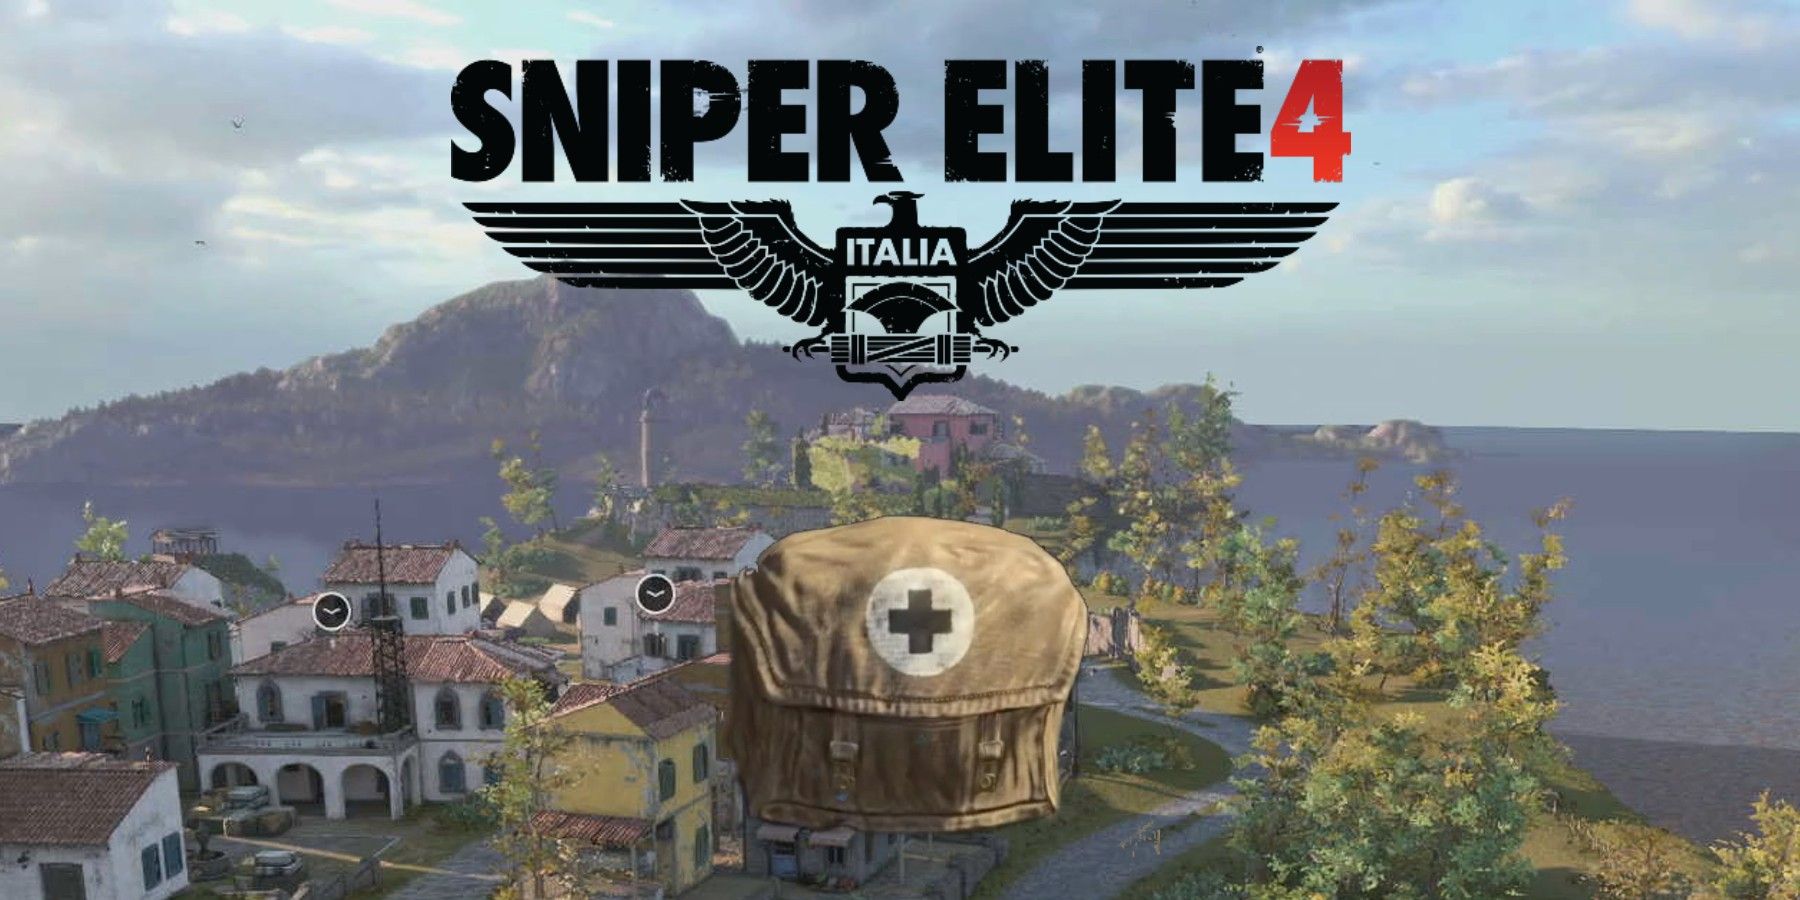 sniper elite 4 logo and medkit